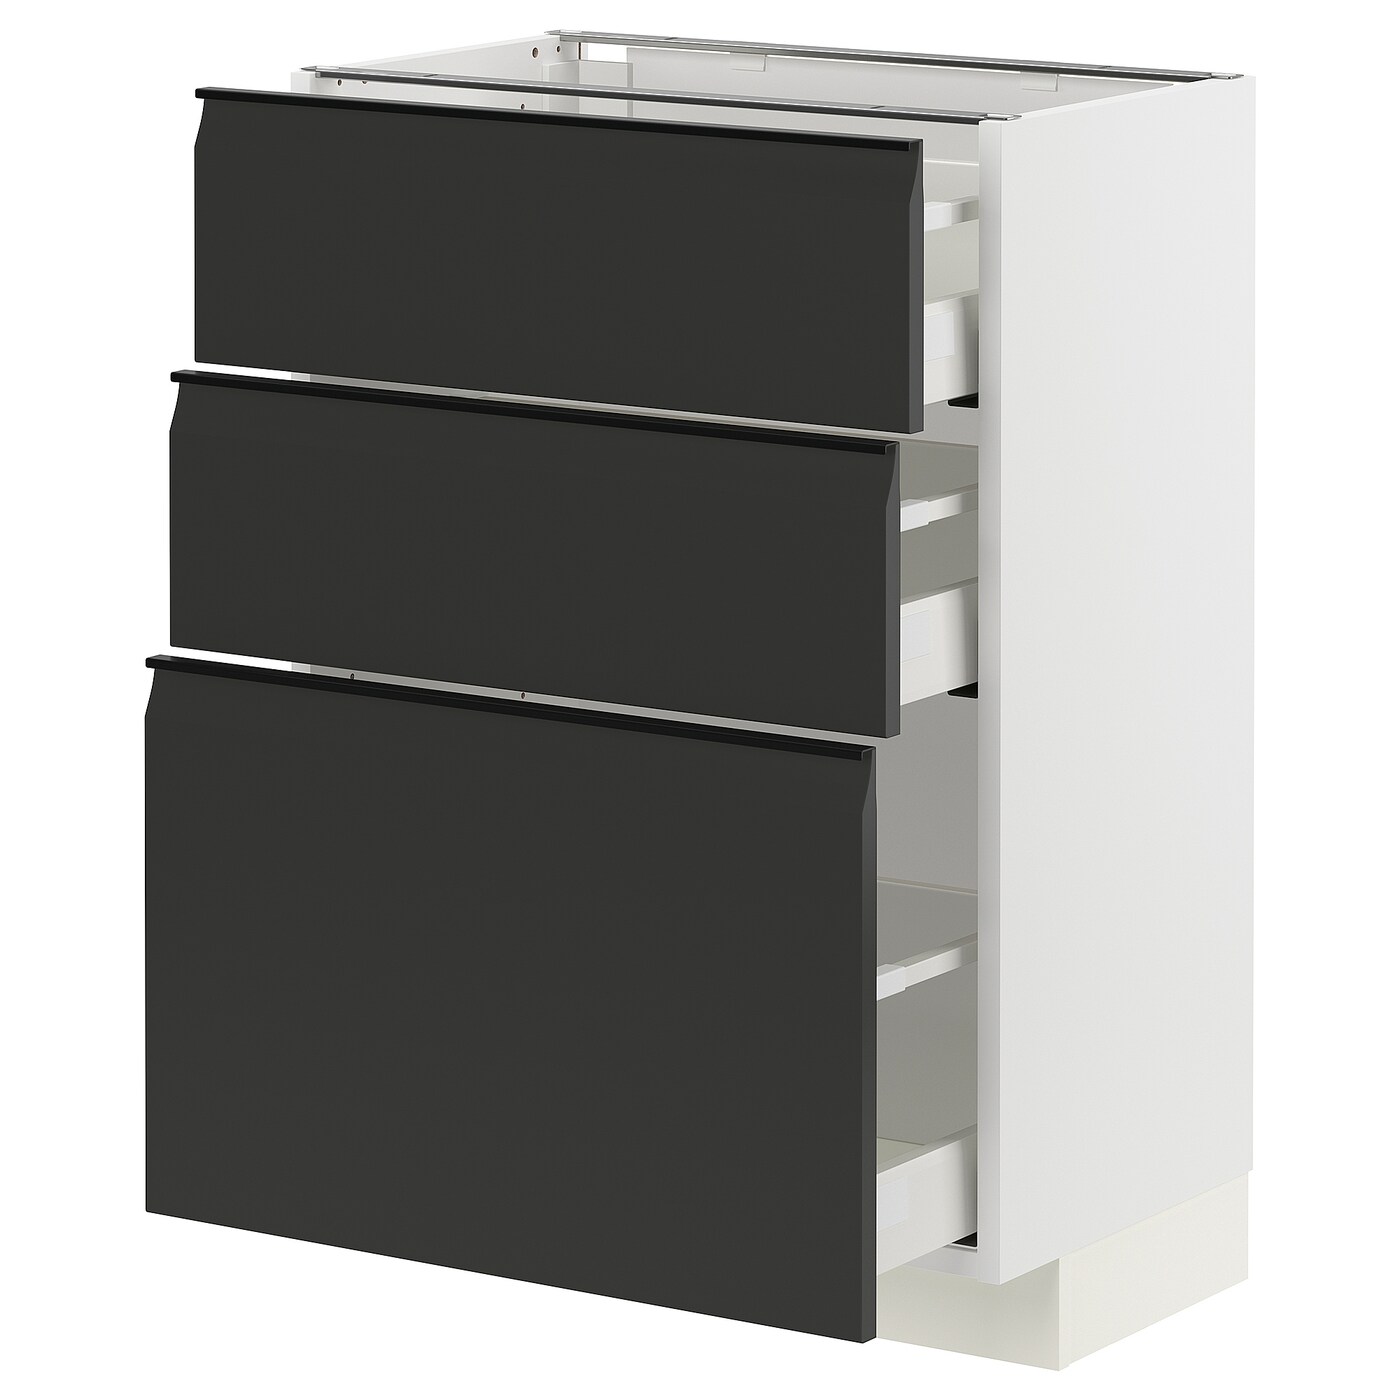 Напольный кухонный шкаф  - IKEA METOD MAXIMERA, 88x39x60см, белый/черный, МЕТОД МАКСИМЕРА ИКЕА